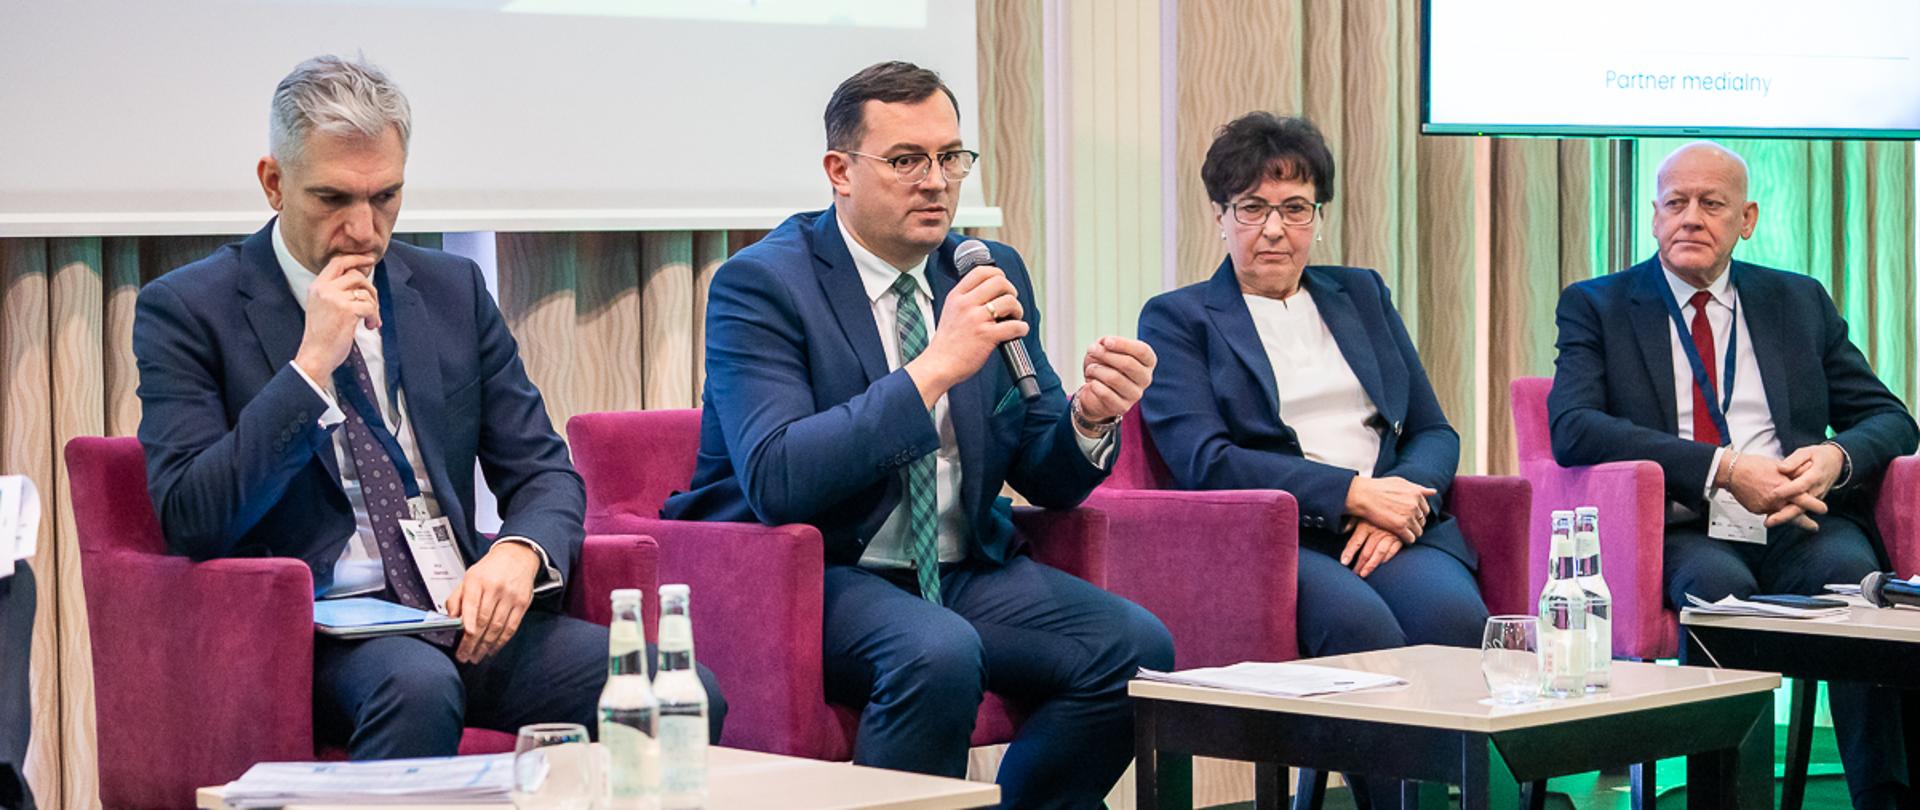 Wiceminister Stefan Krajewski przemawia podczas debaty (fot. MRiRW)